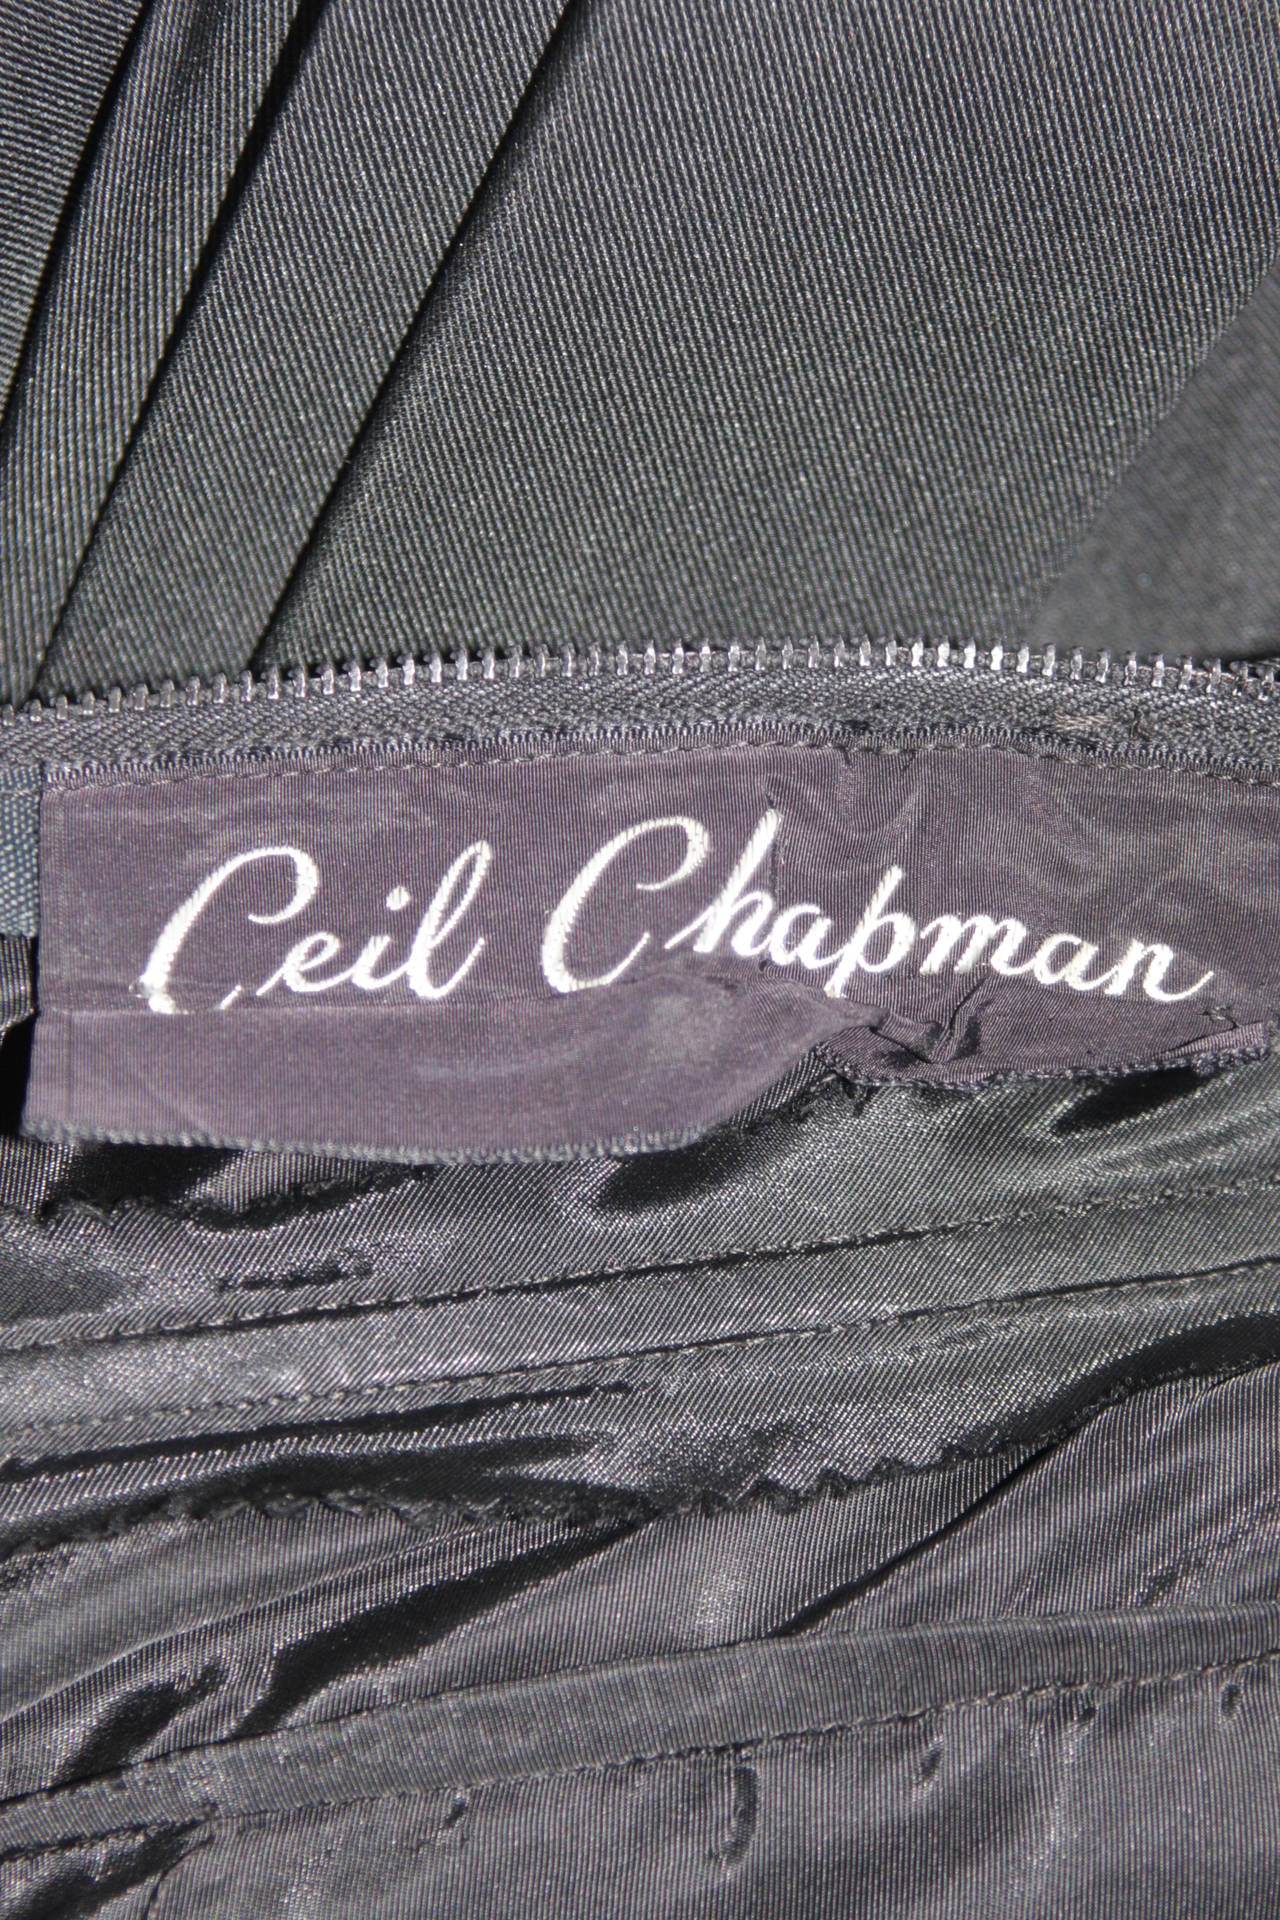 Ceil Chapman 1950's Black Cocktail Draped Cocktail Dress Size S For Sale 5